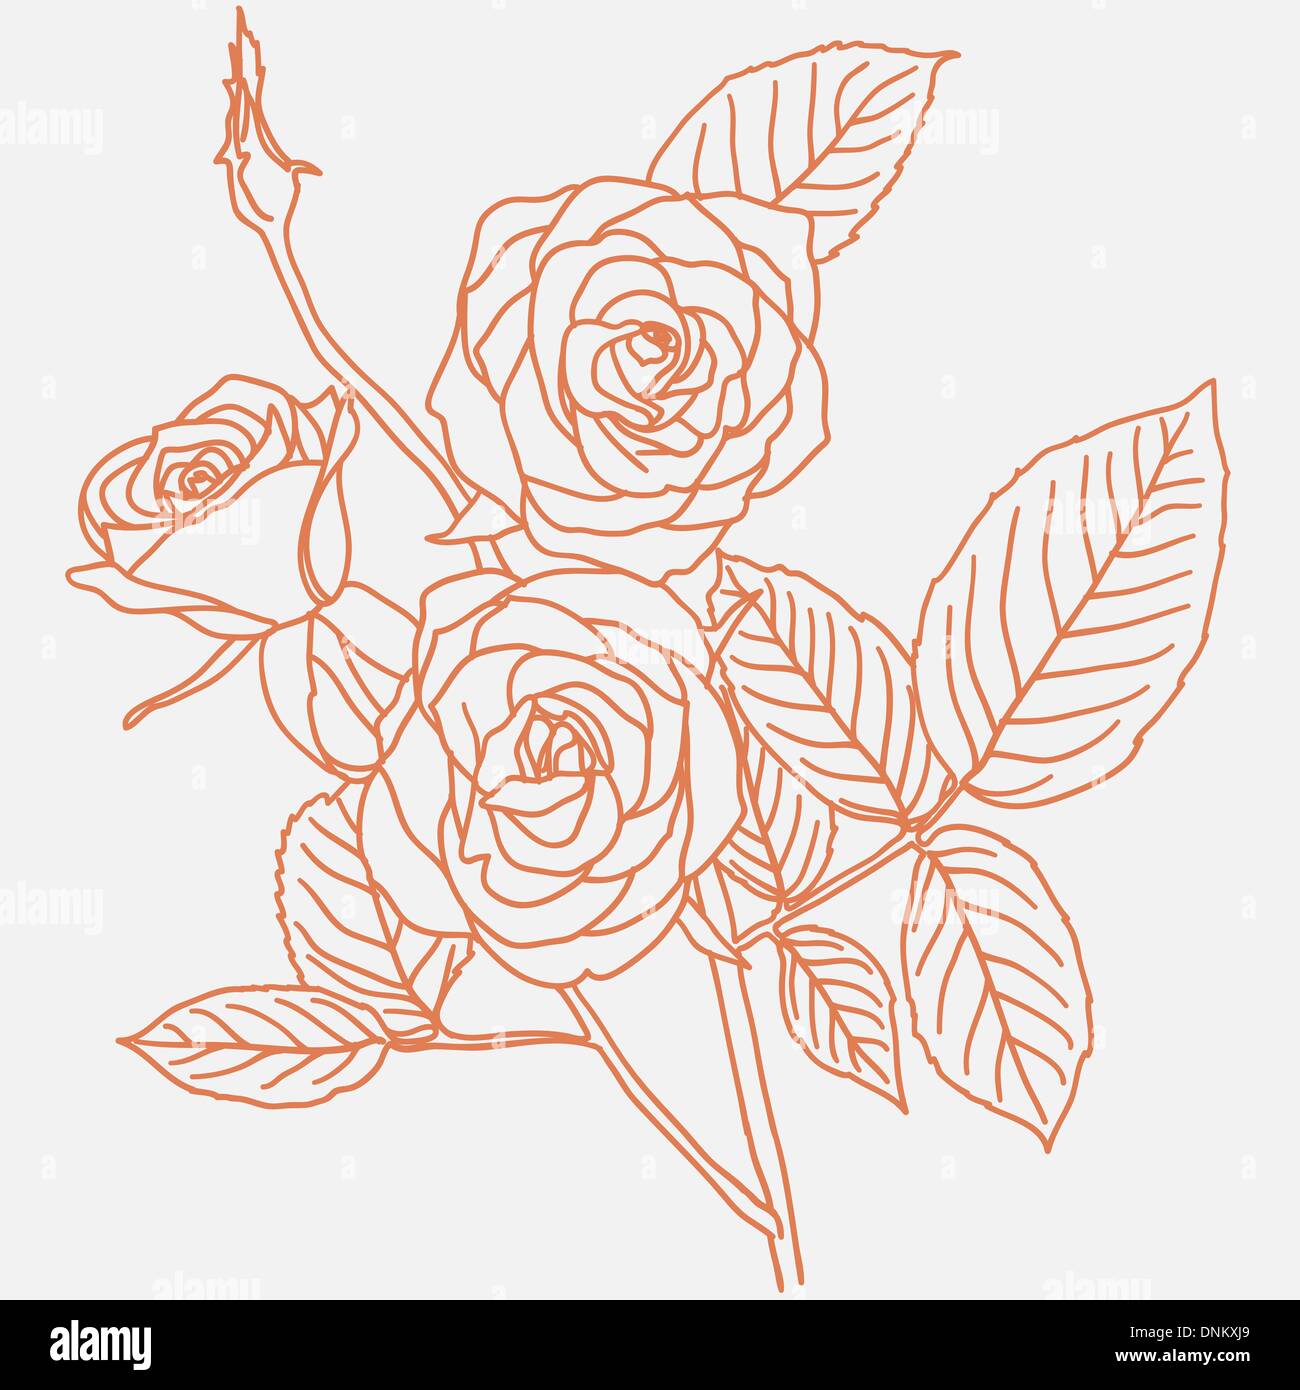 Disegno a mano illustrazione di un mazzo di rose Immagine e Vettoriale -  Alamy